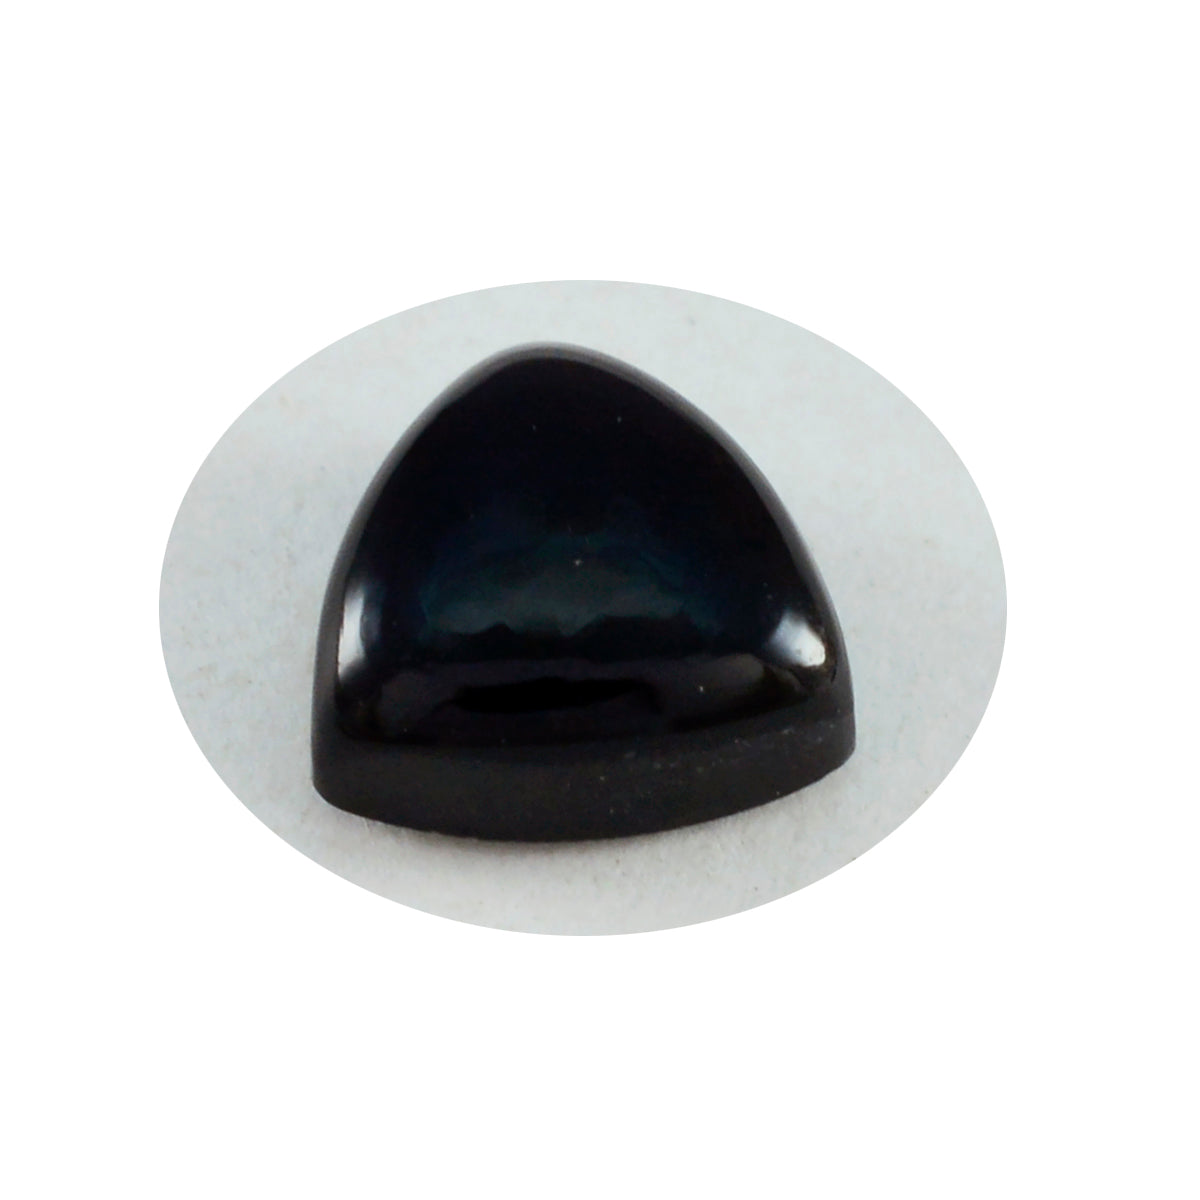 Riyogems 1PC Black Onyx Cabochon 14x14 mm biljoen vorm mooie kwaliteit losse edelsteen